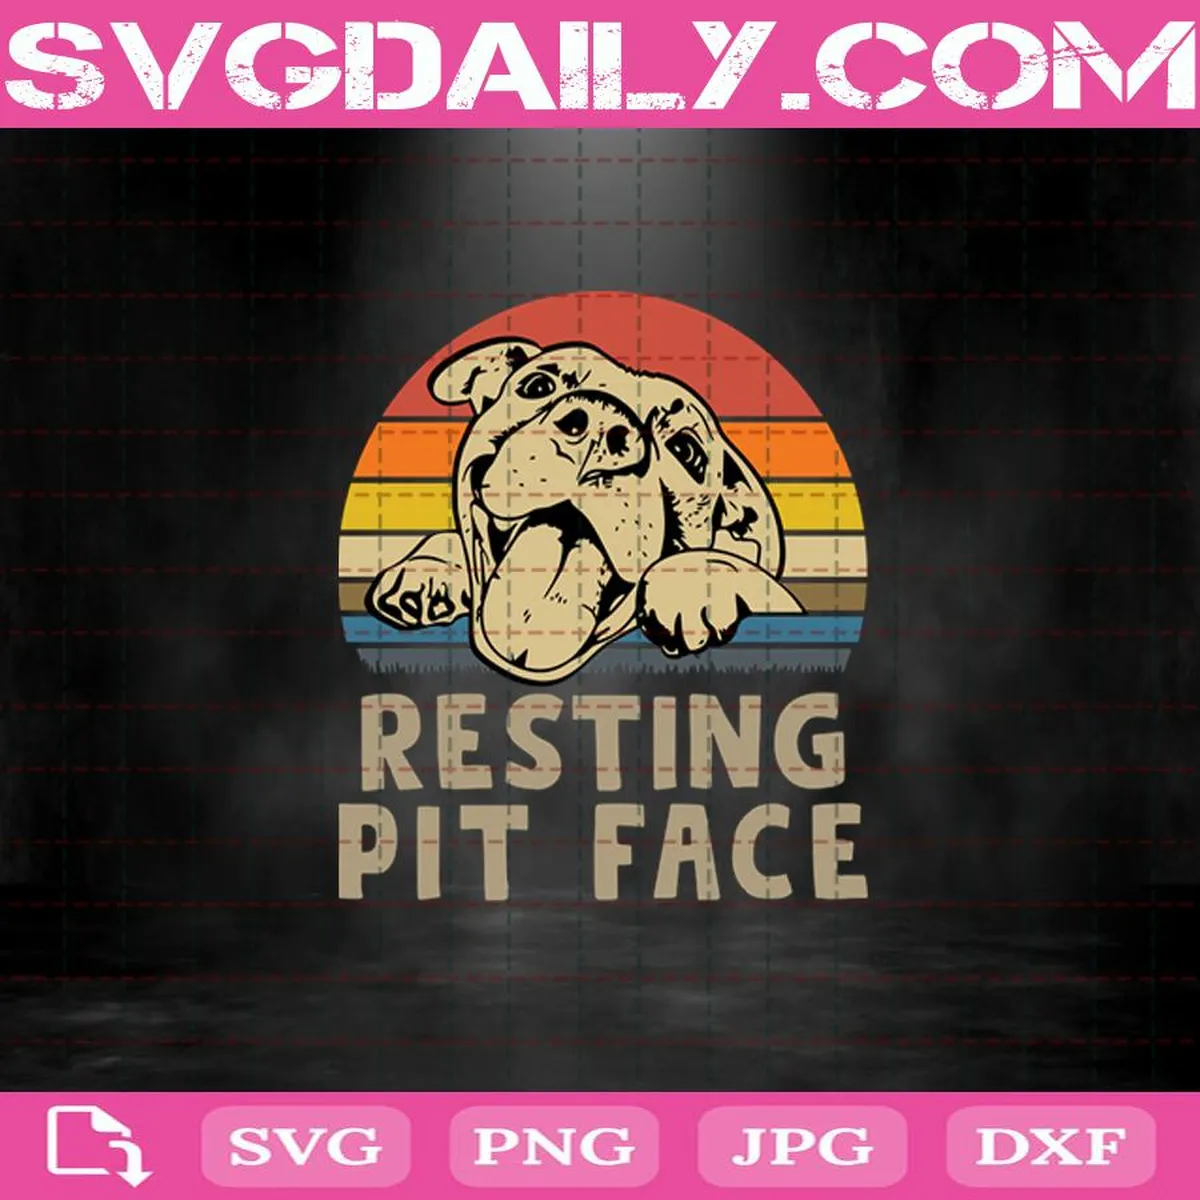 Resting Pit Face Svg, Trending Svg, Pitbull Svg, Pitbull Lovers Svg, Cute Pitbull Svg, Dog Svg, Animal Svg, Pet Lovers Svg